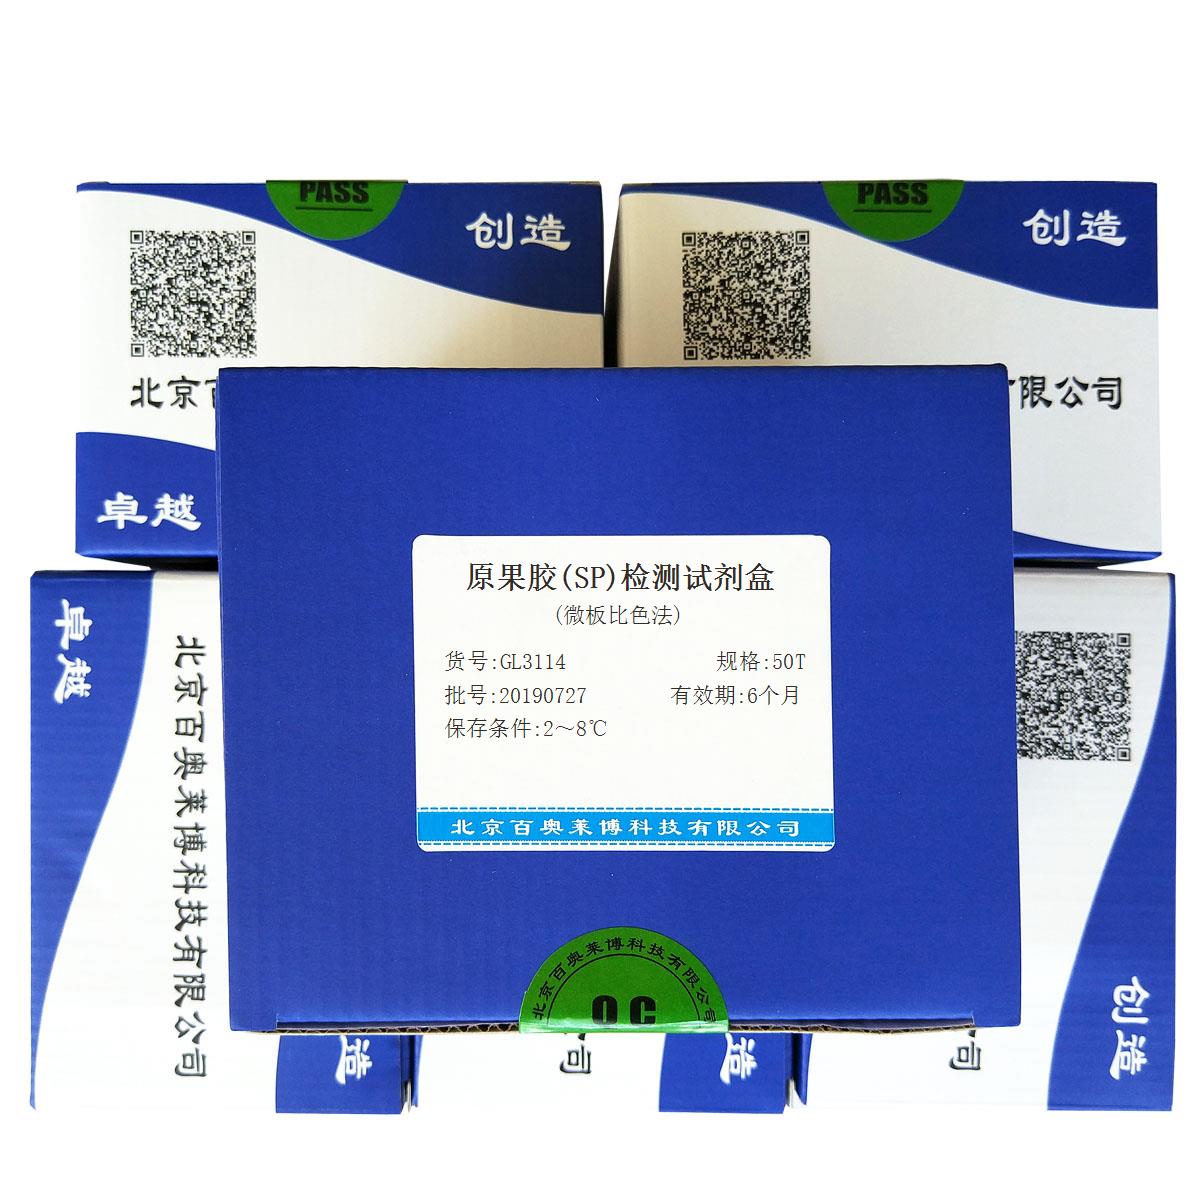 原果胶(SP)检测试剂盒(微板比色法)北京价格